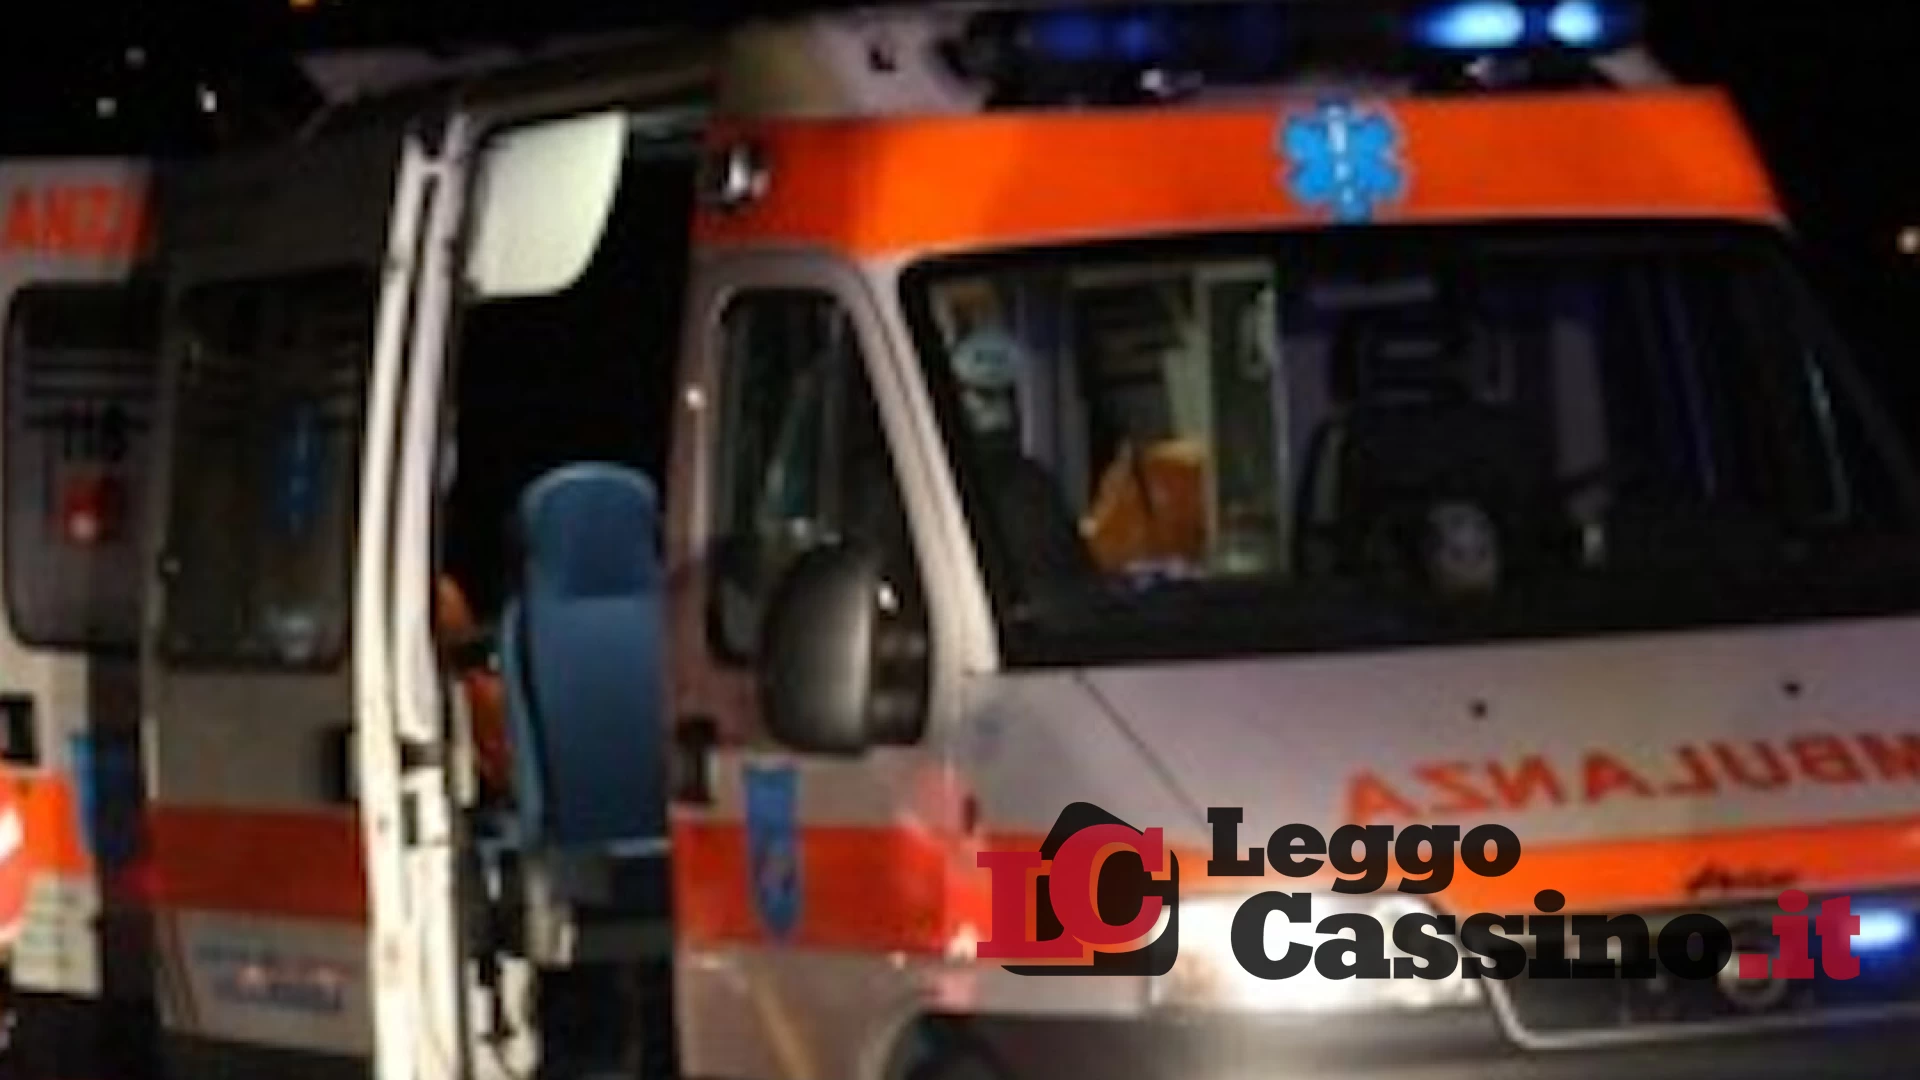 Schianto frontale sulla superstrada Cassino-Sora: tre morti